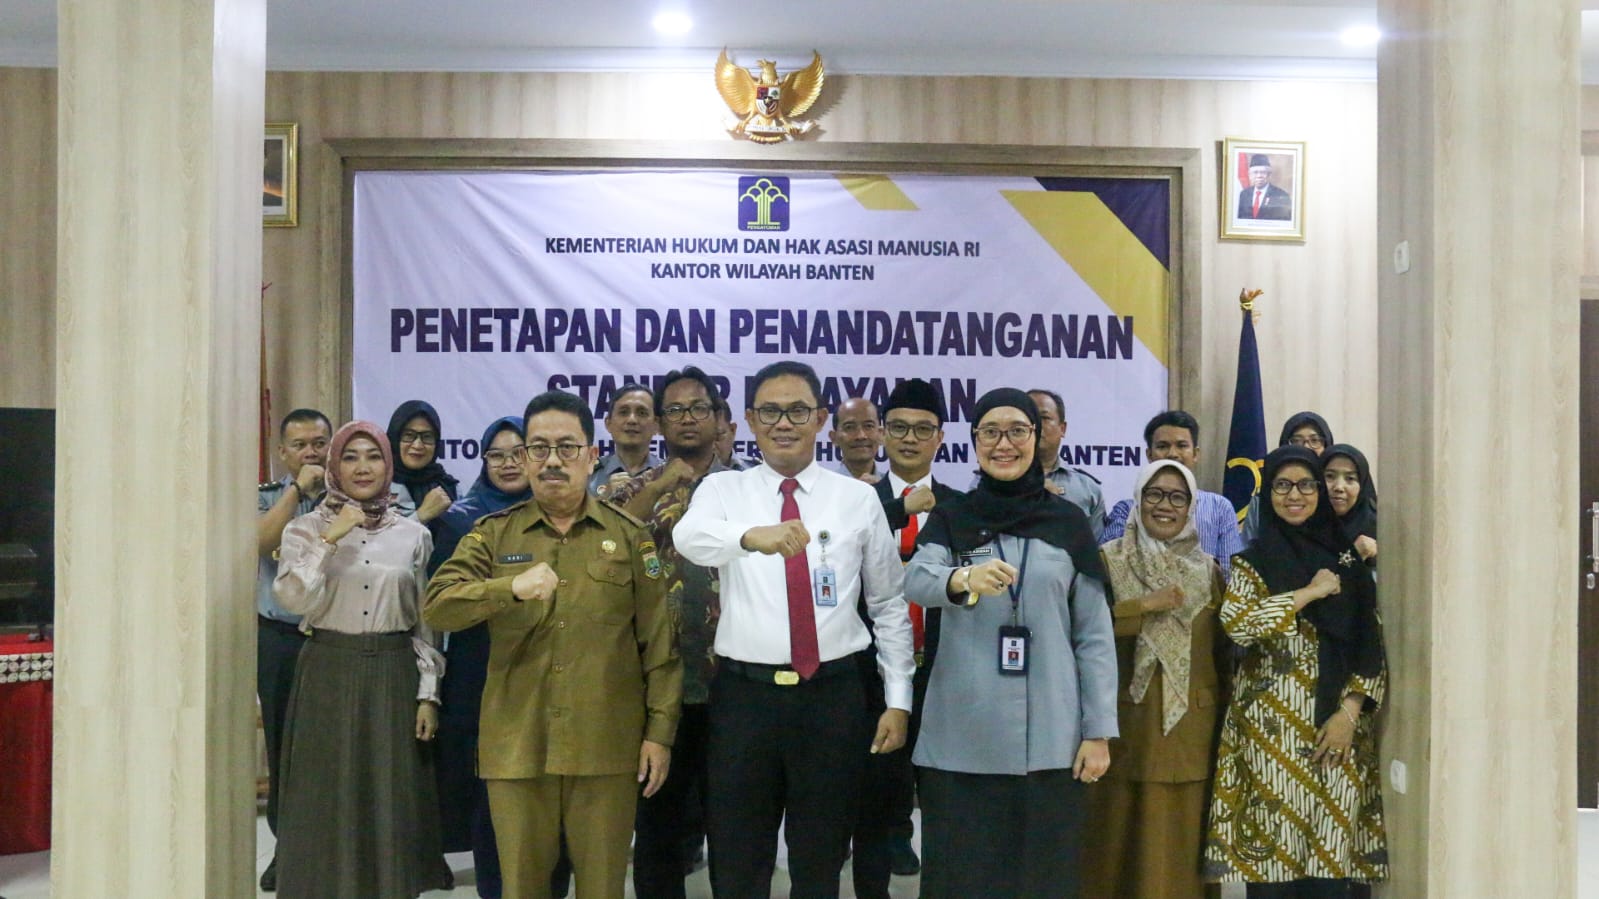 Penetapan dan Penandatanganan Standar Pelayanan Publik Pada Kantor Wilayah Kementerian Hukum dan Hak Asasi Manusia Banten